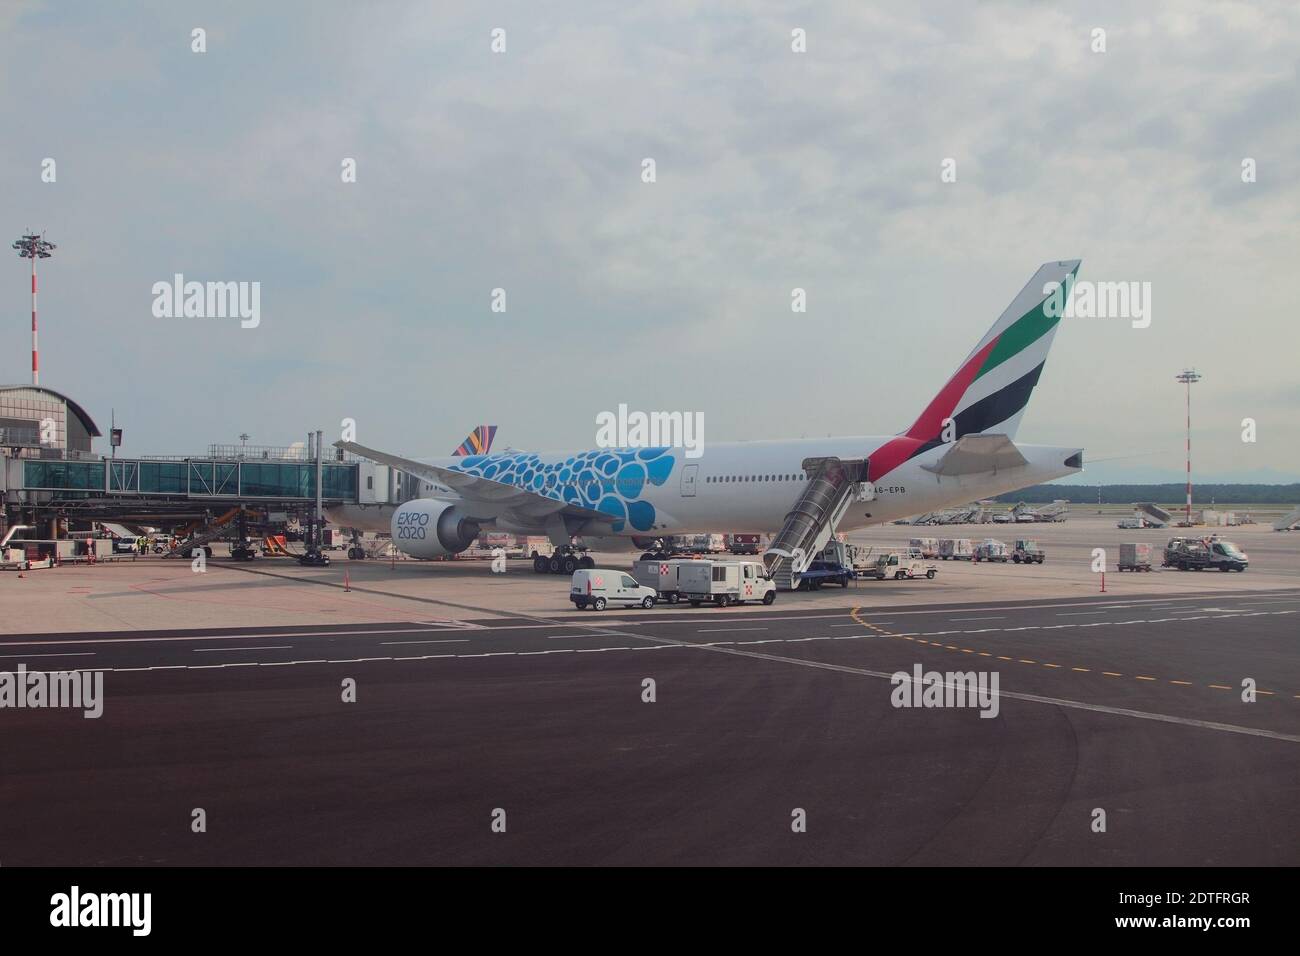 Milán, Italia - Jun 29, 2019: Emirates Airlines avión en el delantal en el aeropuerto internacional Foto de stock